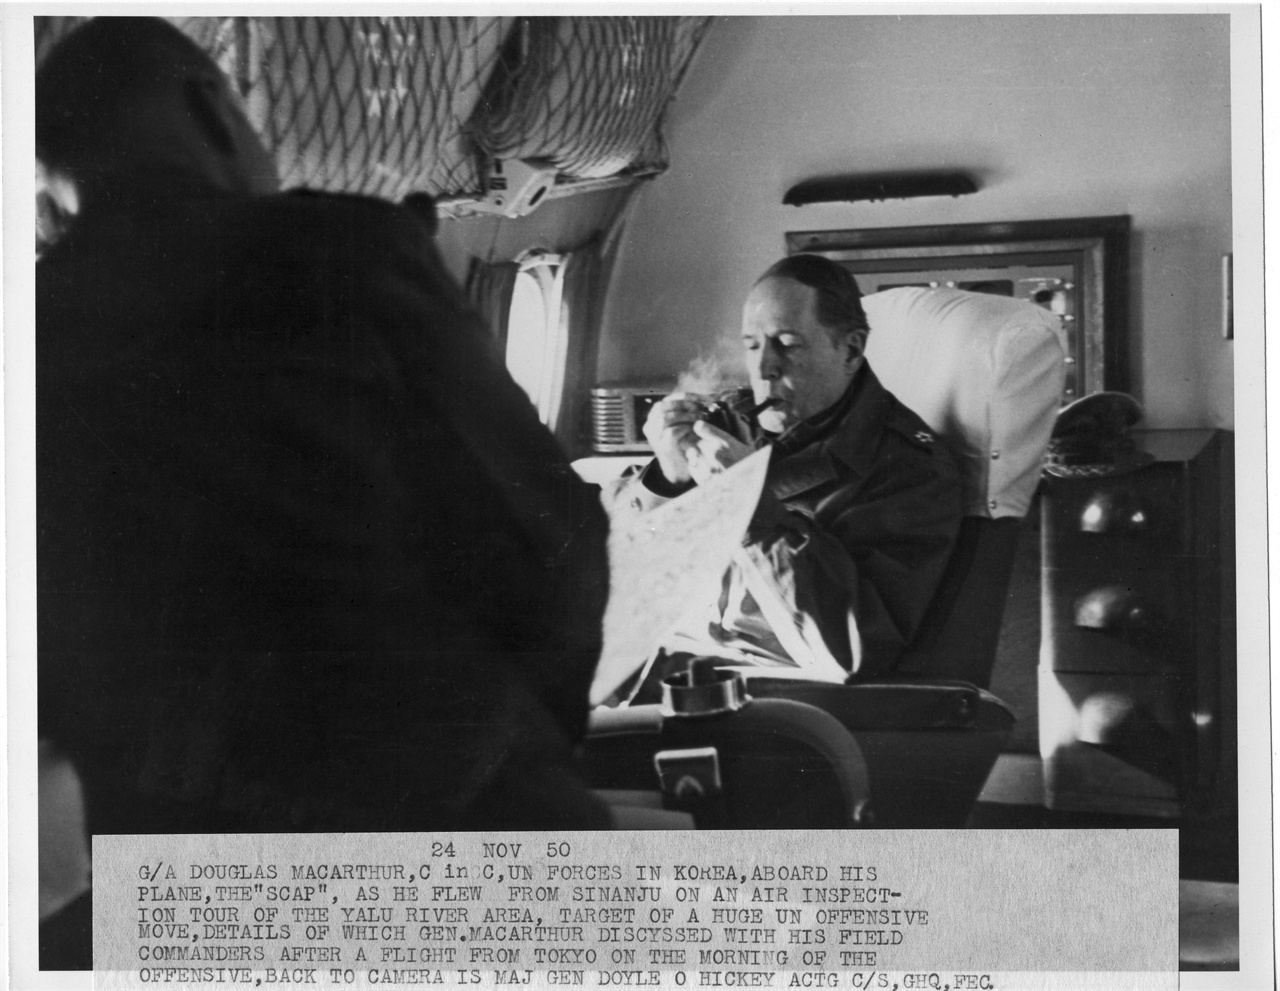  맥아더 장군이 신의주 상공 비행기 안에서 파이프를 문 채 지도를 펴 보며 ‘크리스마스 공격작전’ 구상을 하고 있다.